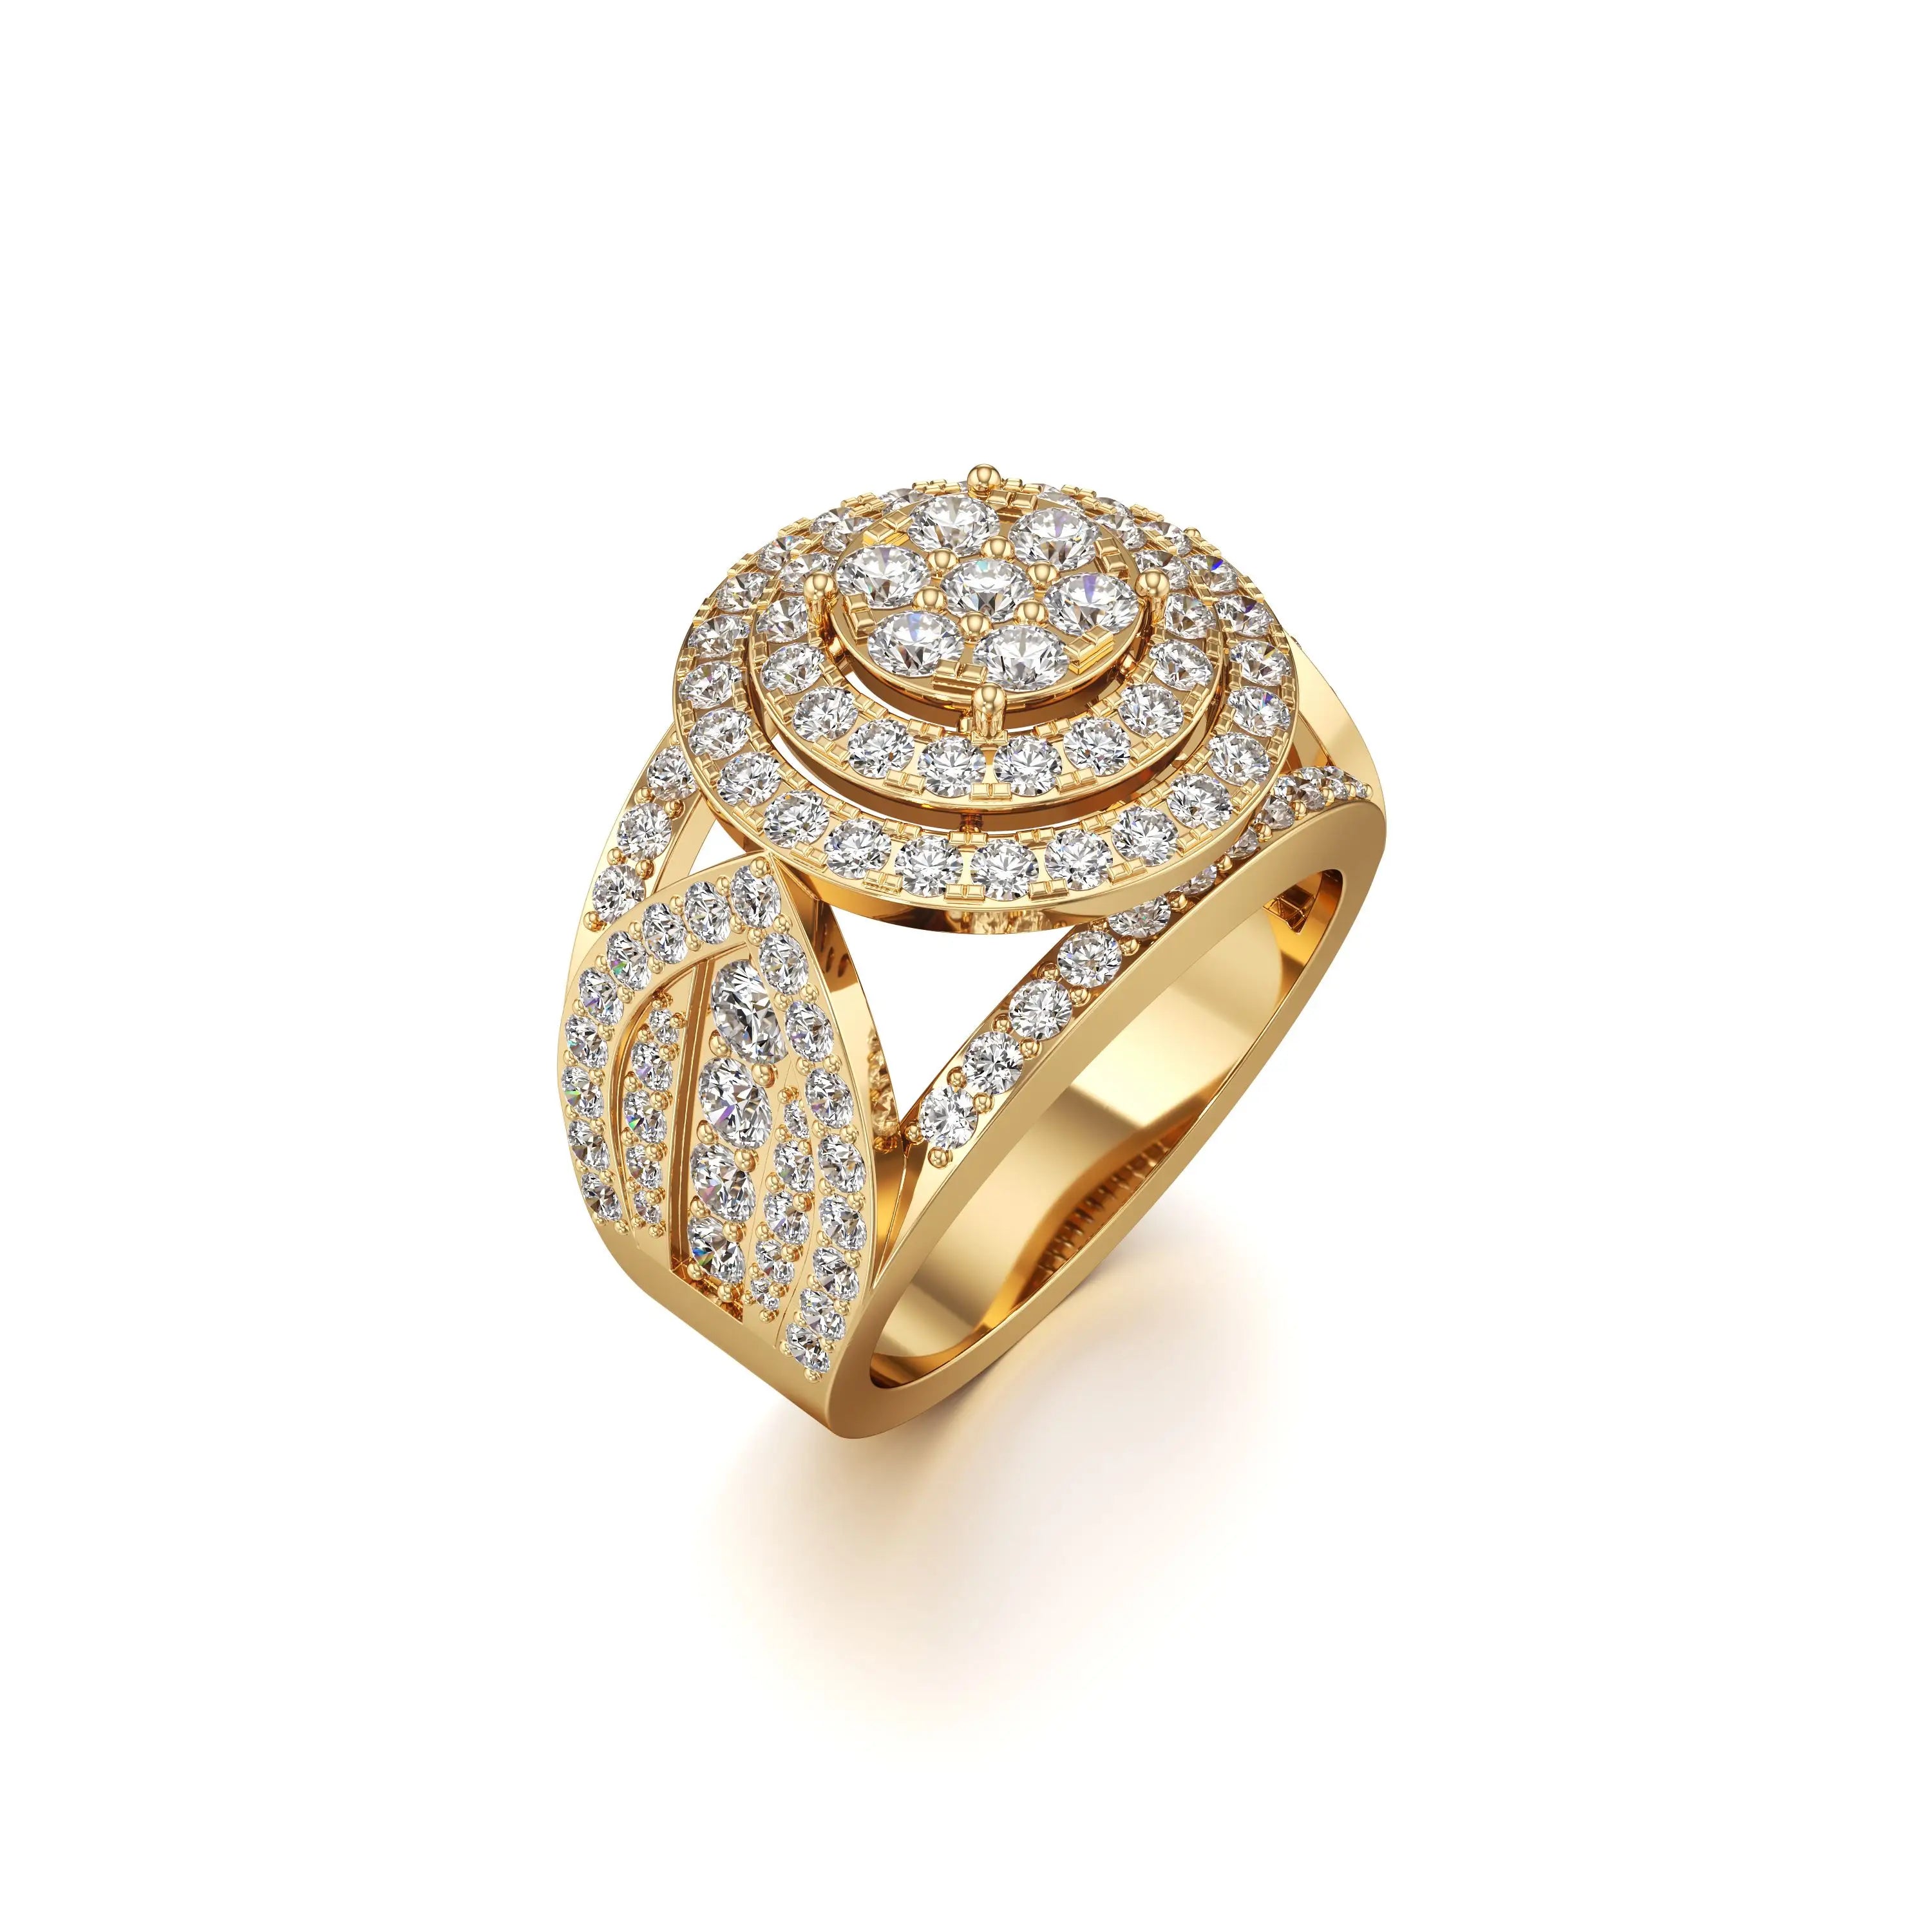 Irie Big Lab Grown Diamond Ring